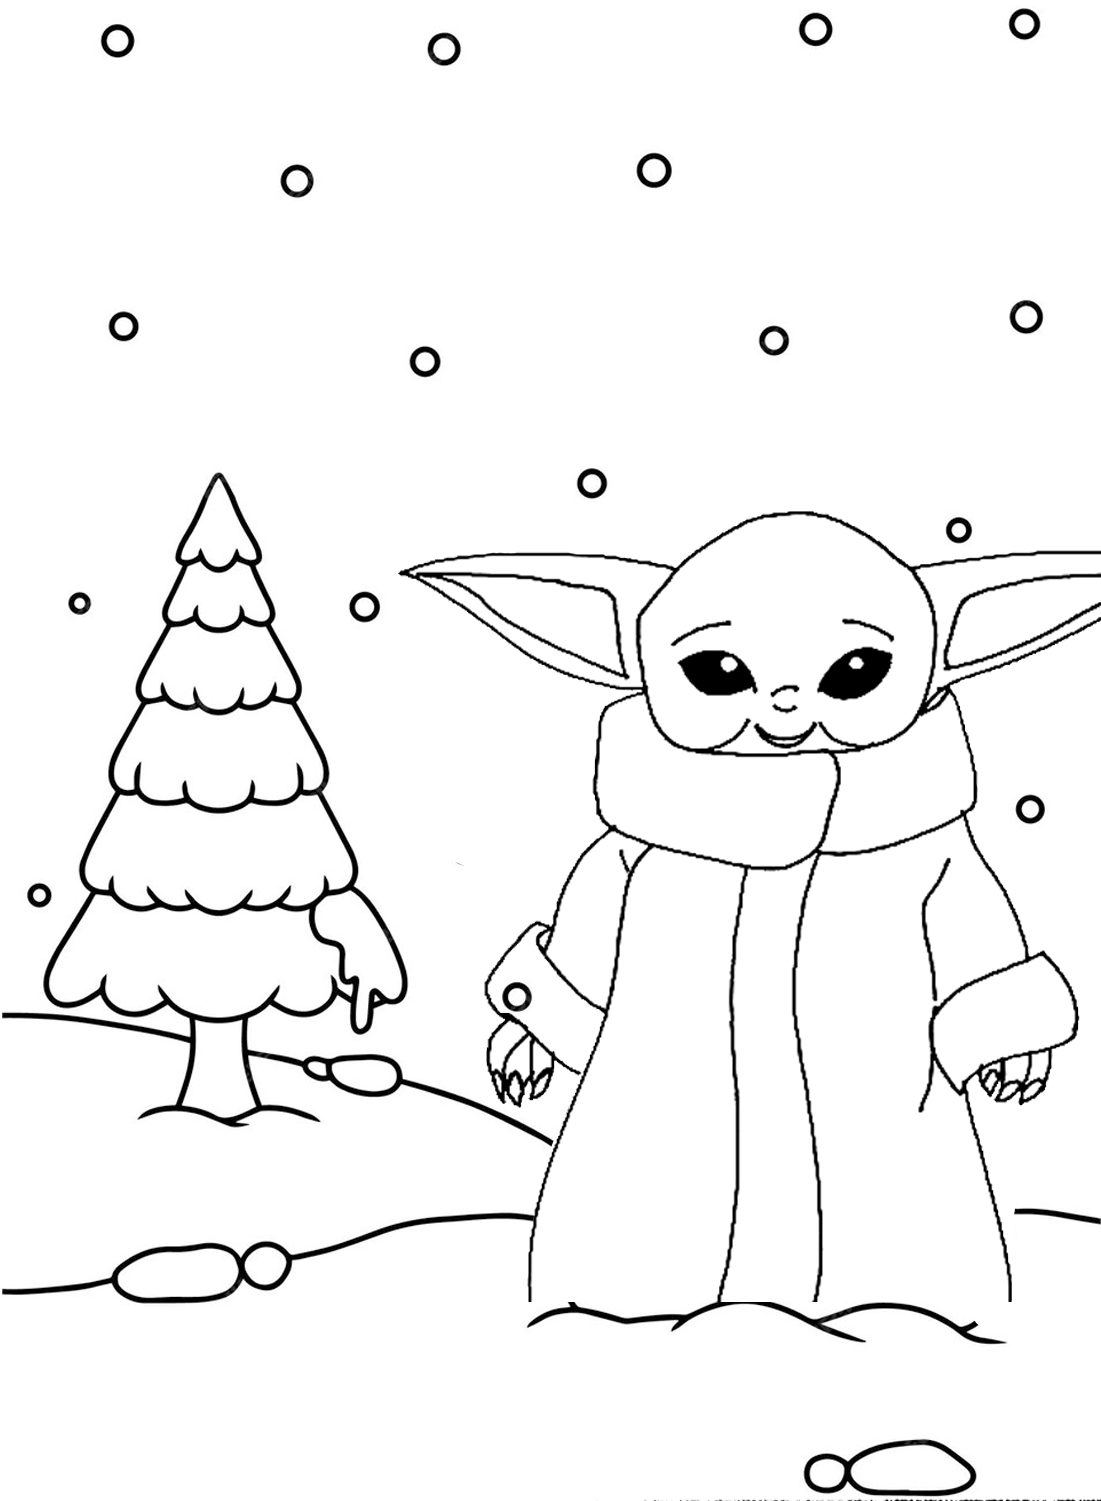 Foglio colori albero di Natale e Baby Yoda